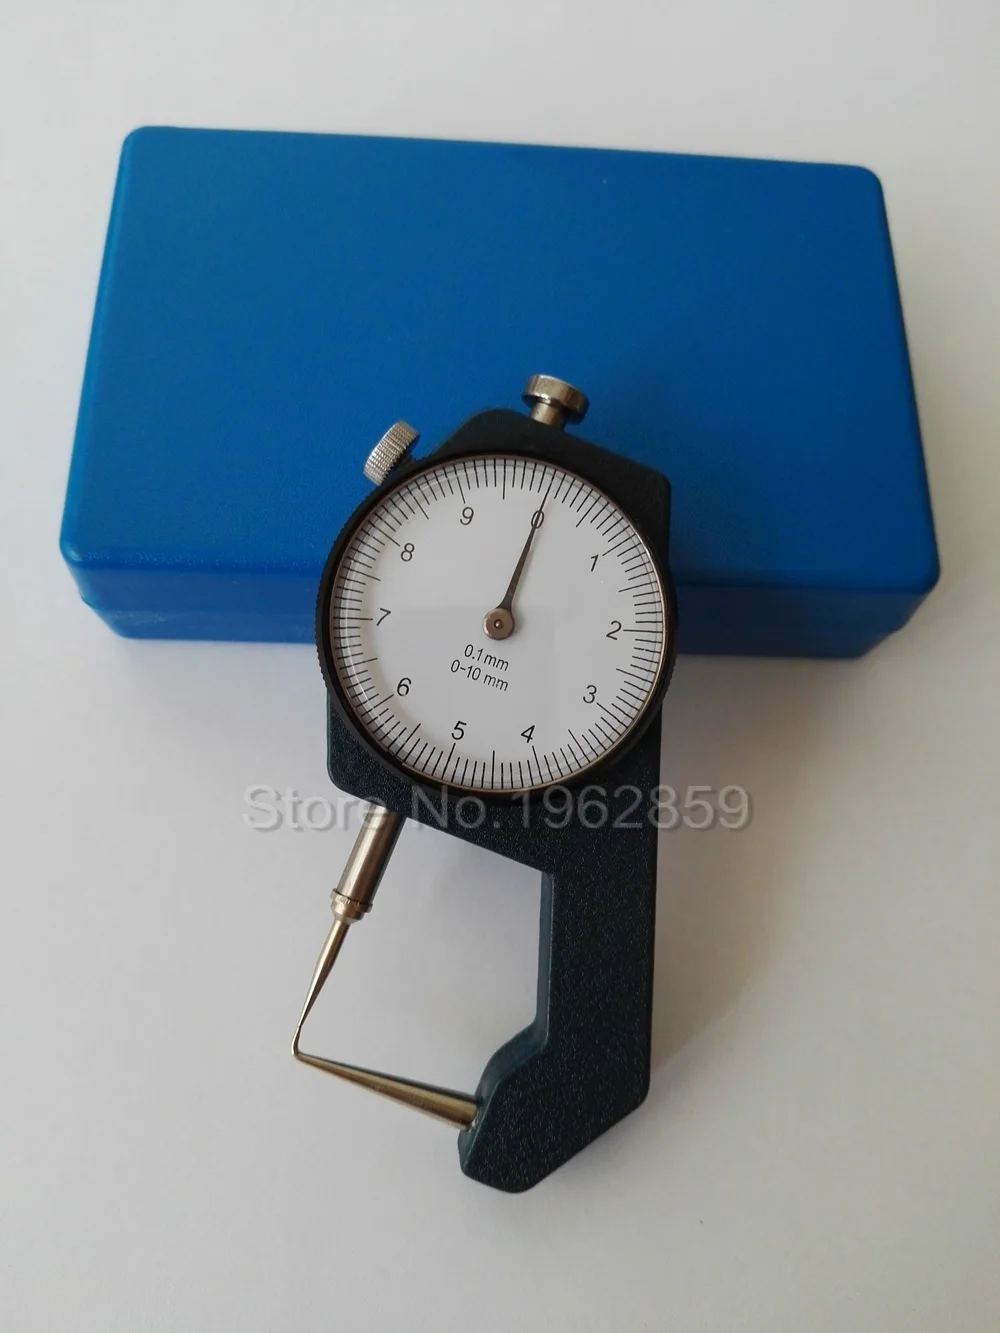 Зубоврачебный штангенциркуль дебелометрия 0-10*0.1 mm штангенциркуль с метални часовник измерване на дебелината на зубоврачебное лабораторно оборудване на стоматологични инструменти